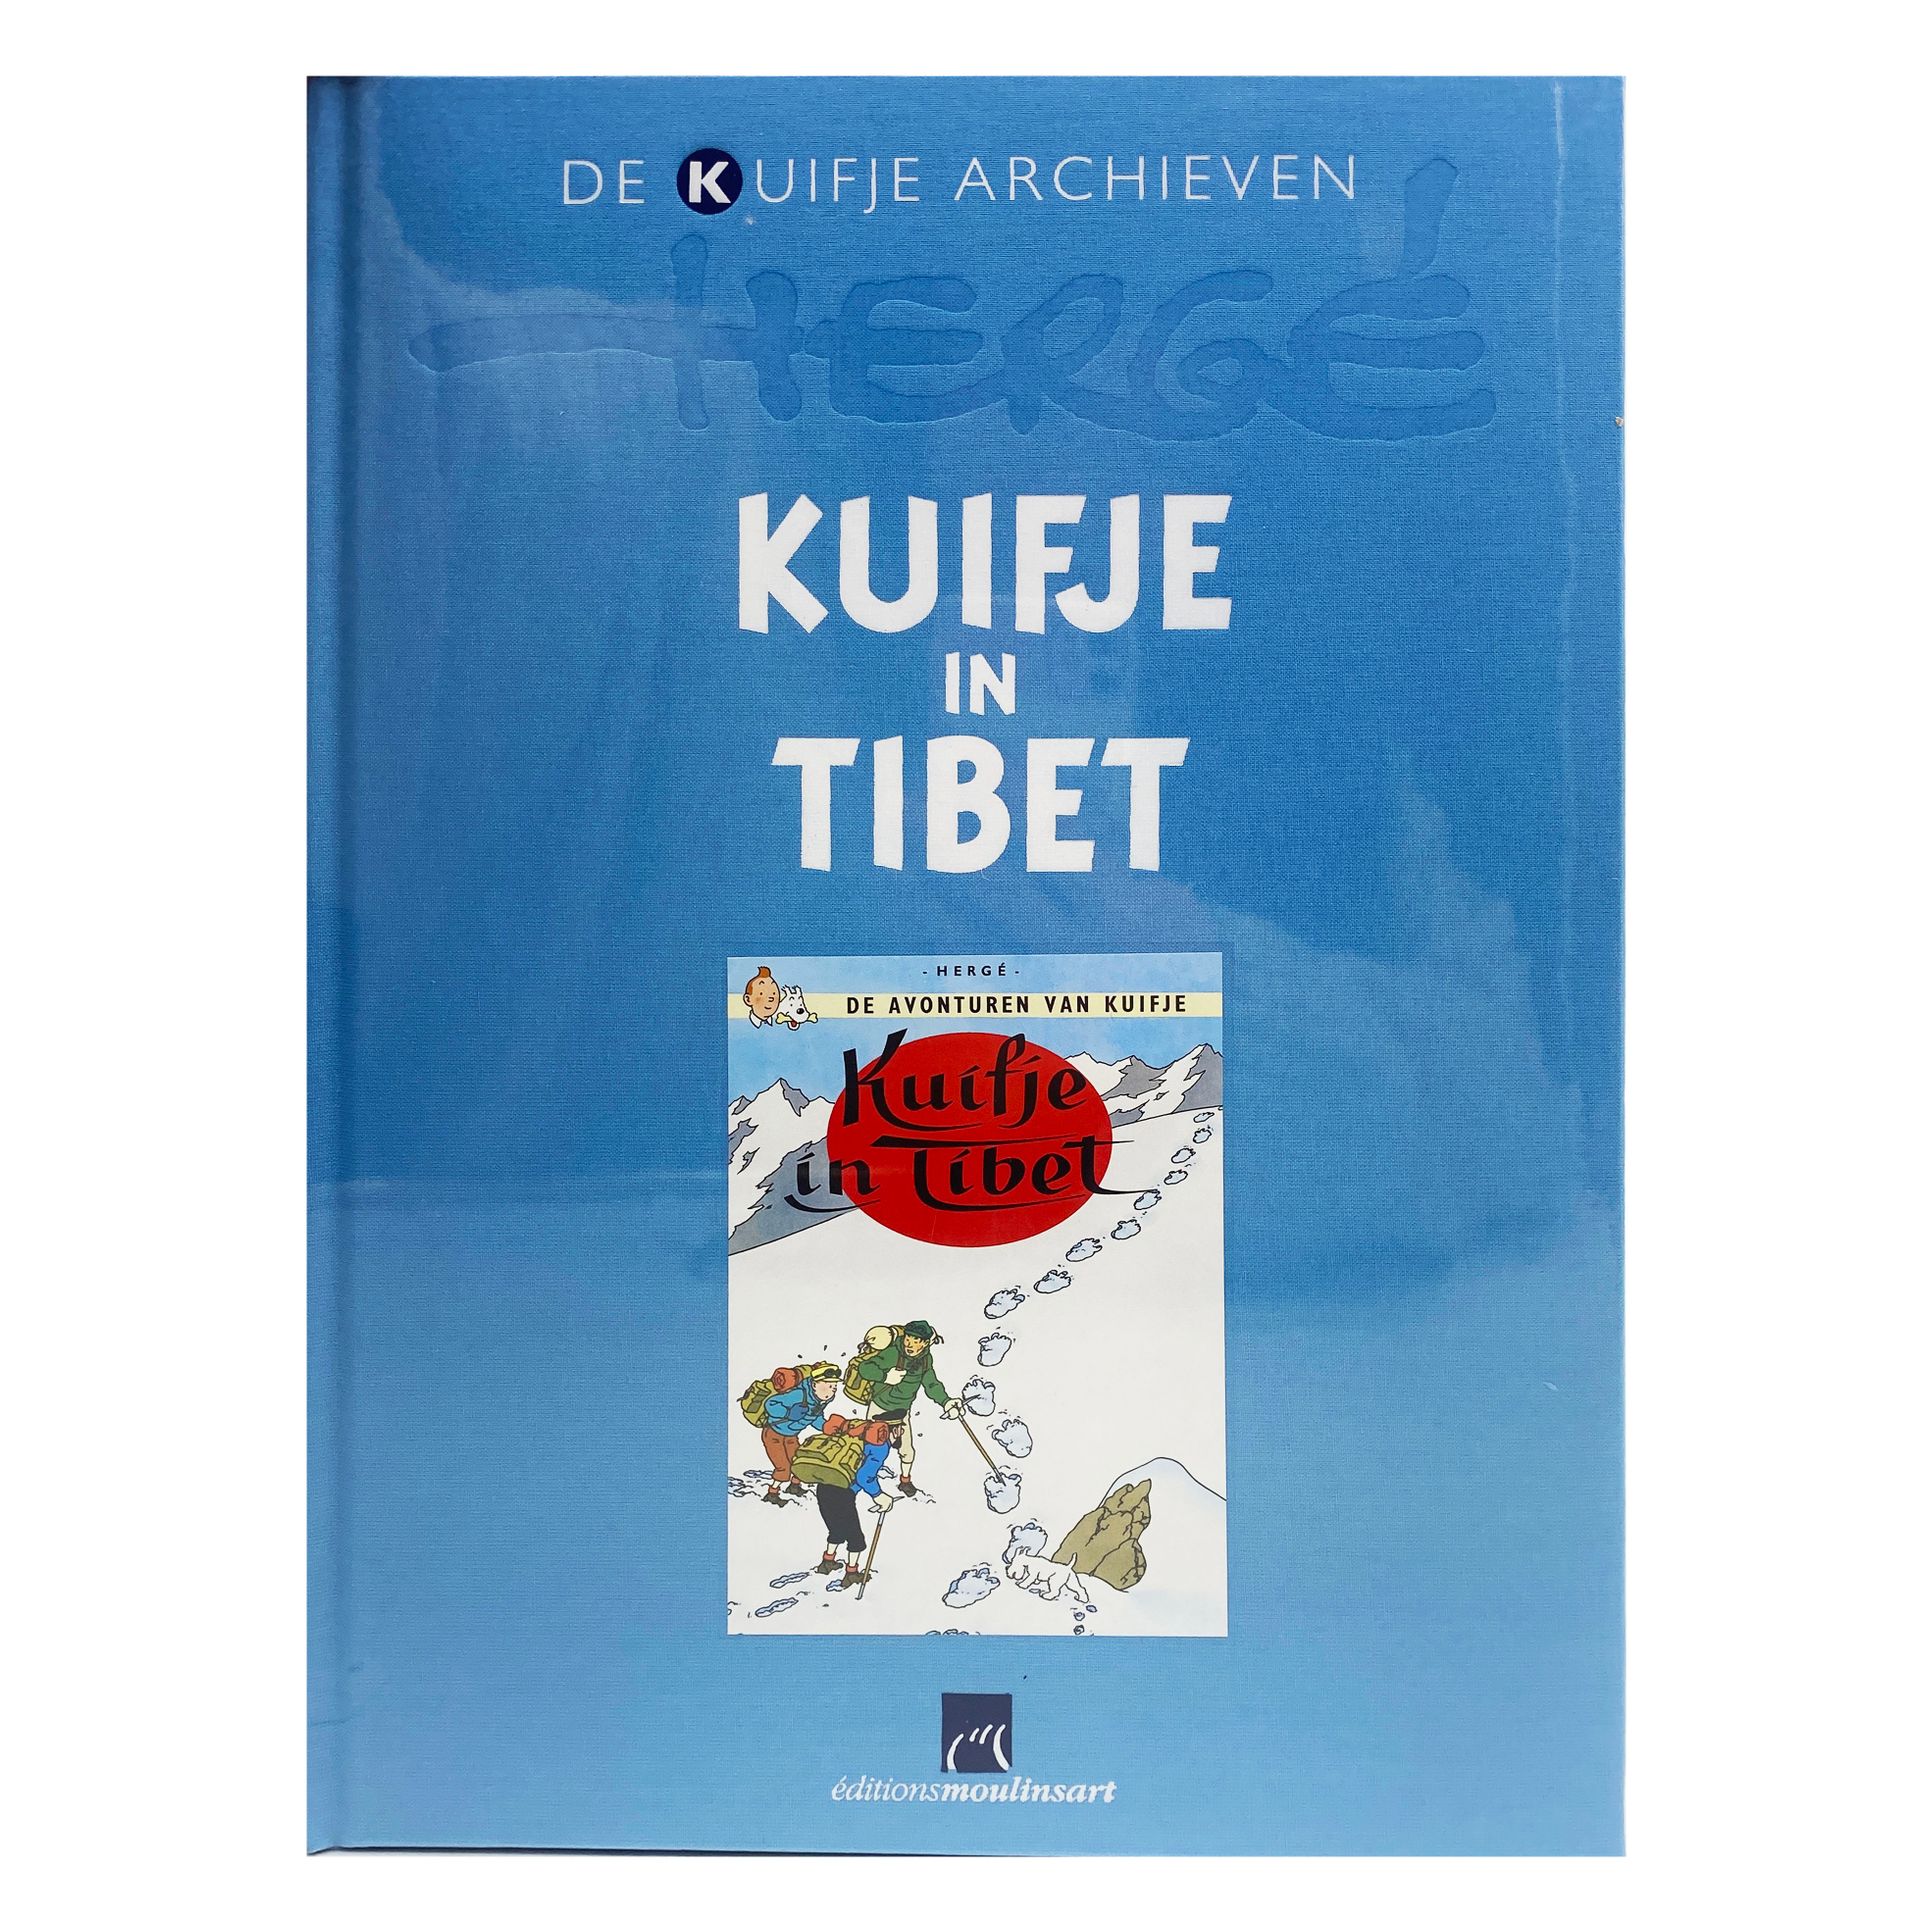 Null [HERGÉ] - Los archivos de Tintín " Tintín en el Tíbet / Kuifje en el Tíbet &hellip;